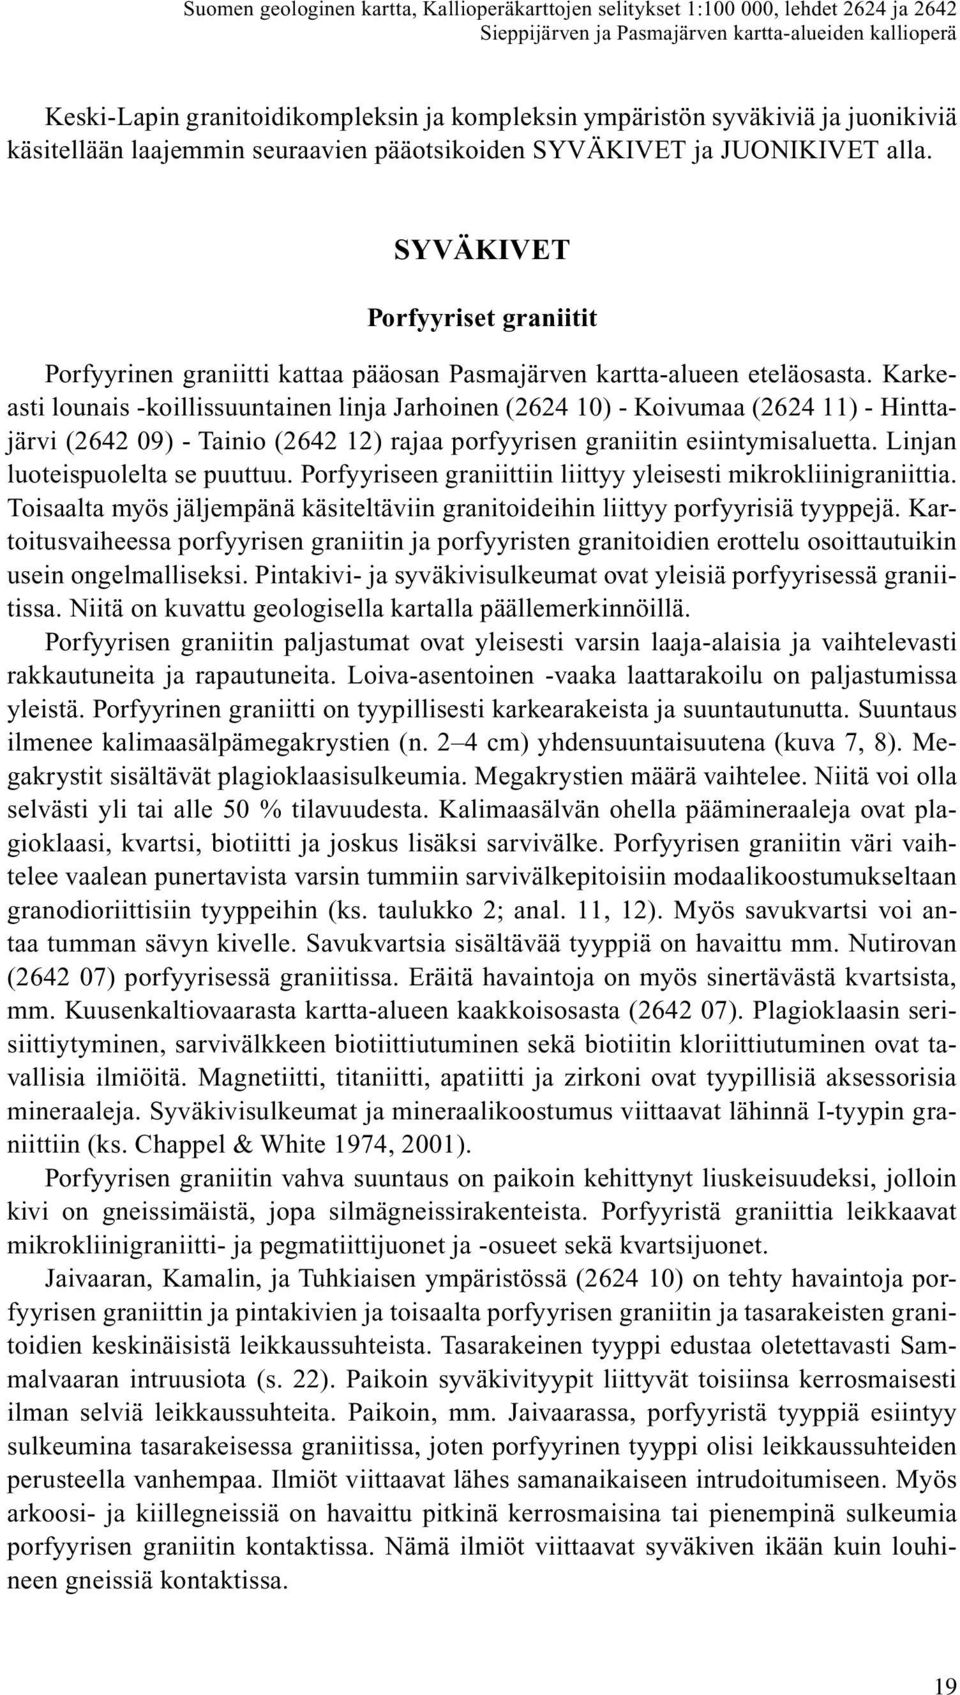 Karkeasti lounais -koillissuuntainen linja Jarhoinen (2624 10) - Koivumaa (2624 11) - Hinttajärvi (2642 09) - Tainio (2642 12) rajaa porfyyrisen graniitin esiintymisaluetta.